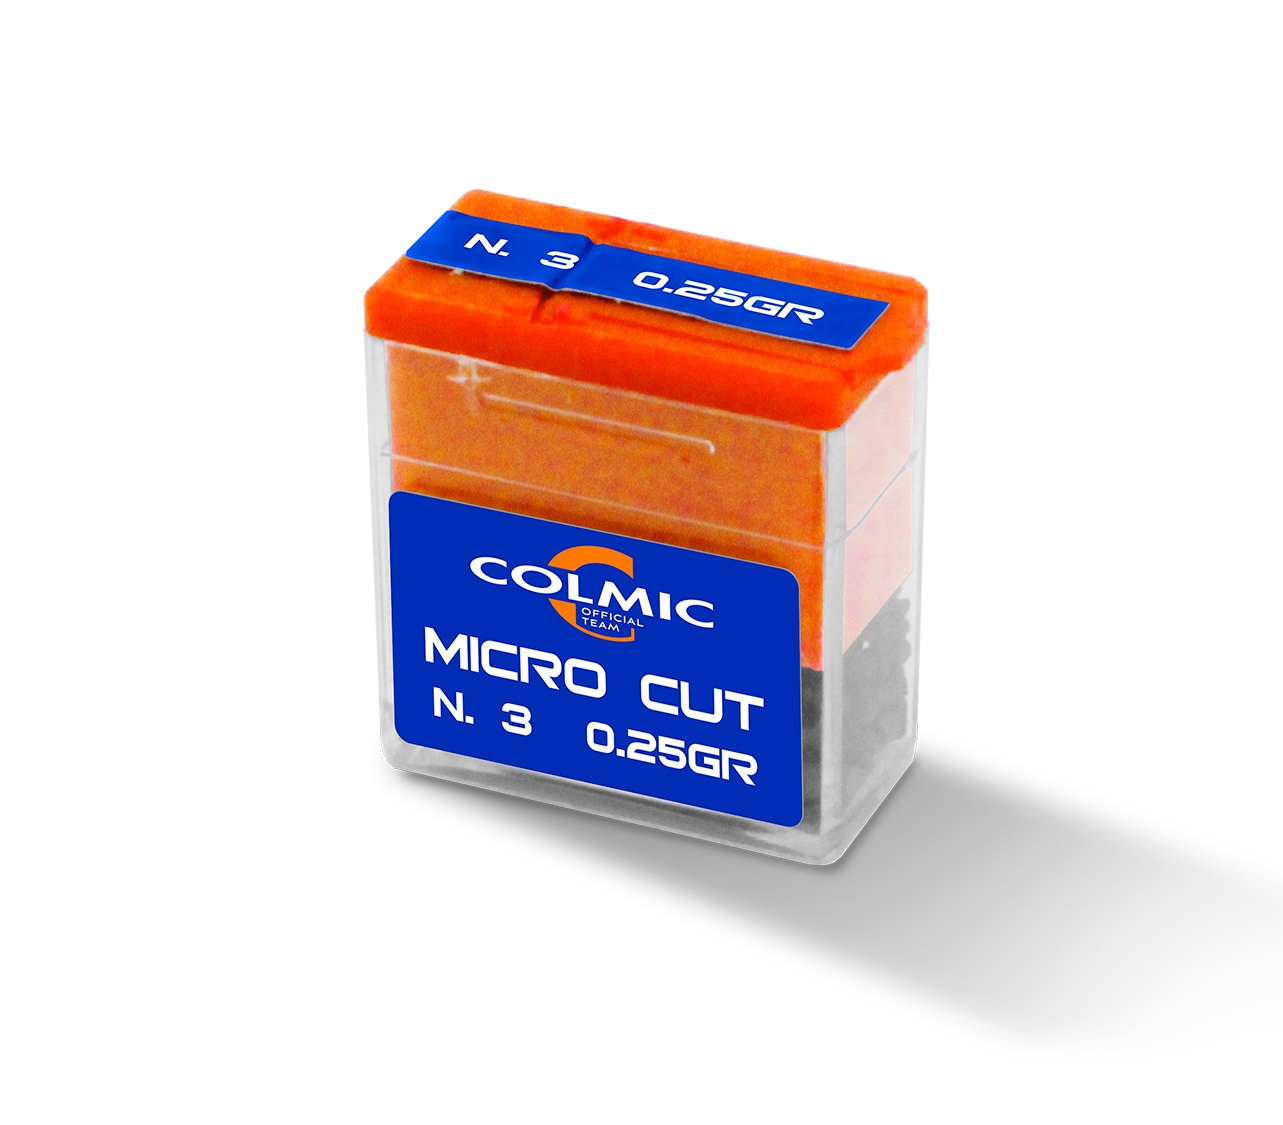 Colmic Micro Cut Dispensador de Plomos N.8  (0.064 g)